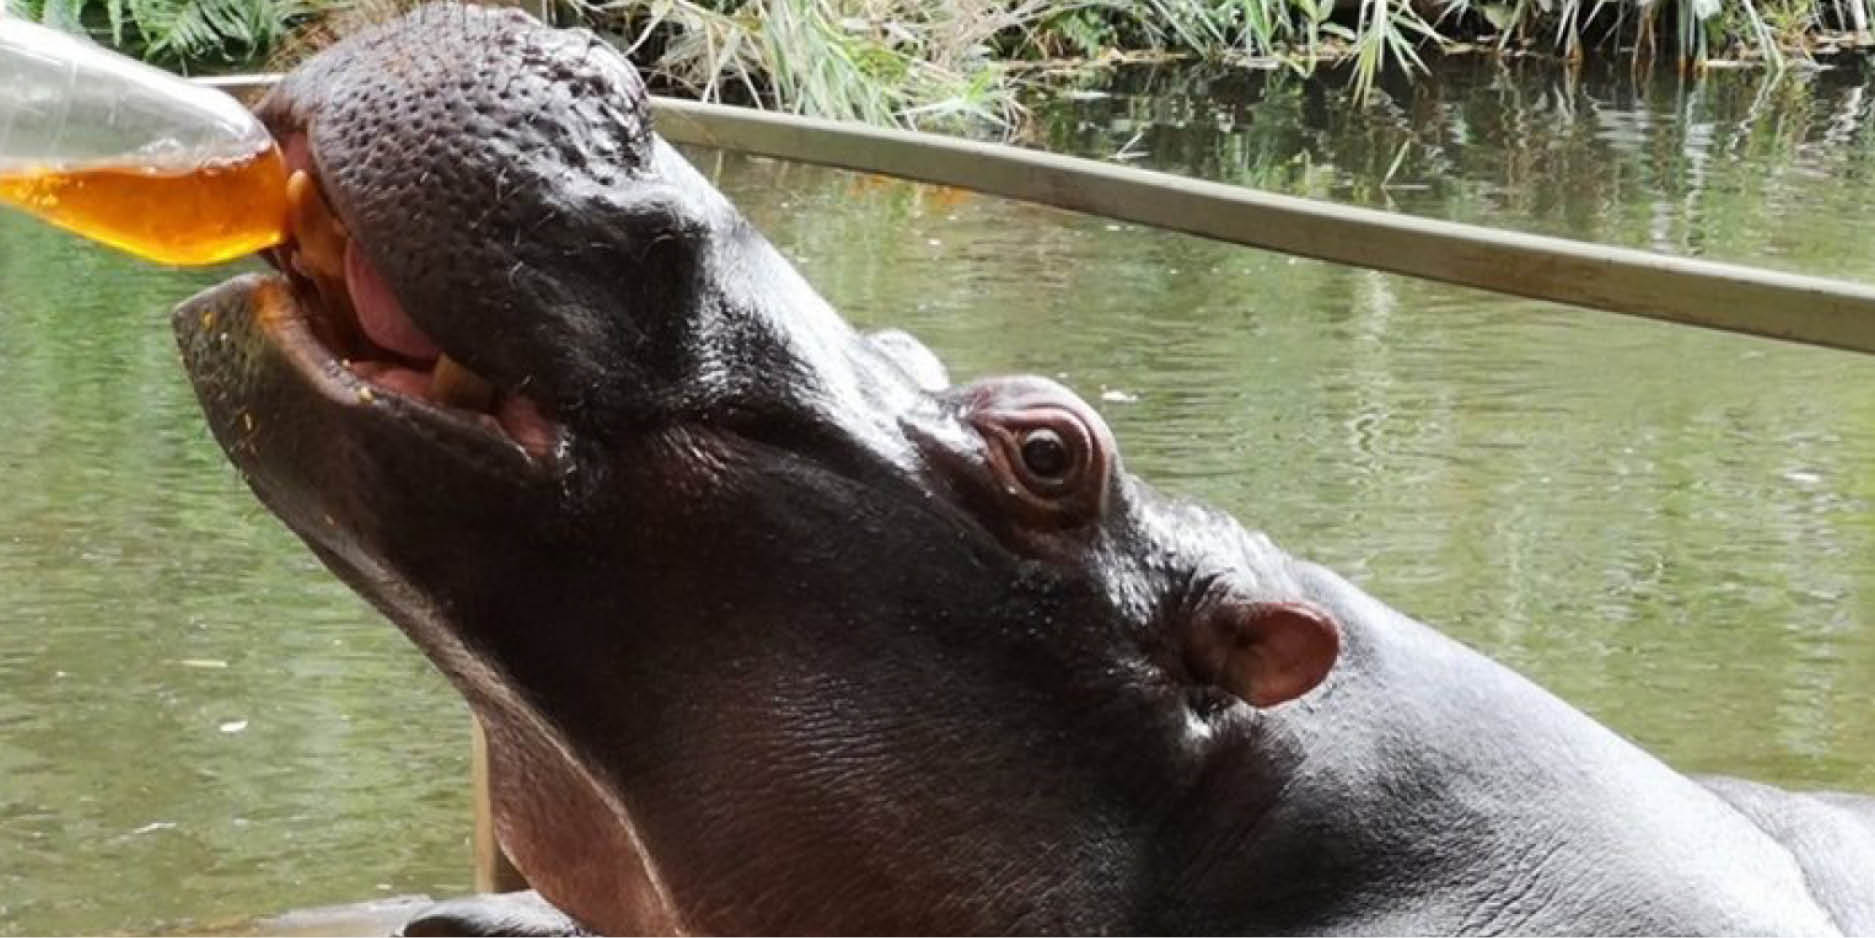 Voici Jessica, l'hippopotame branché qui aime le thé rooibos.